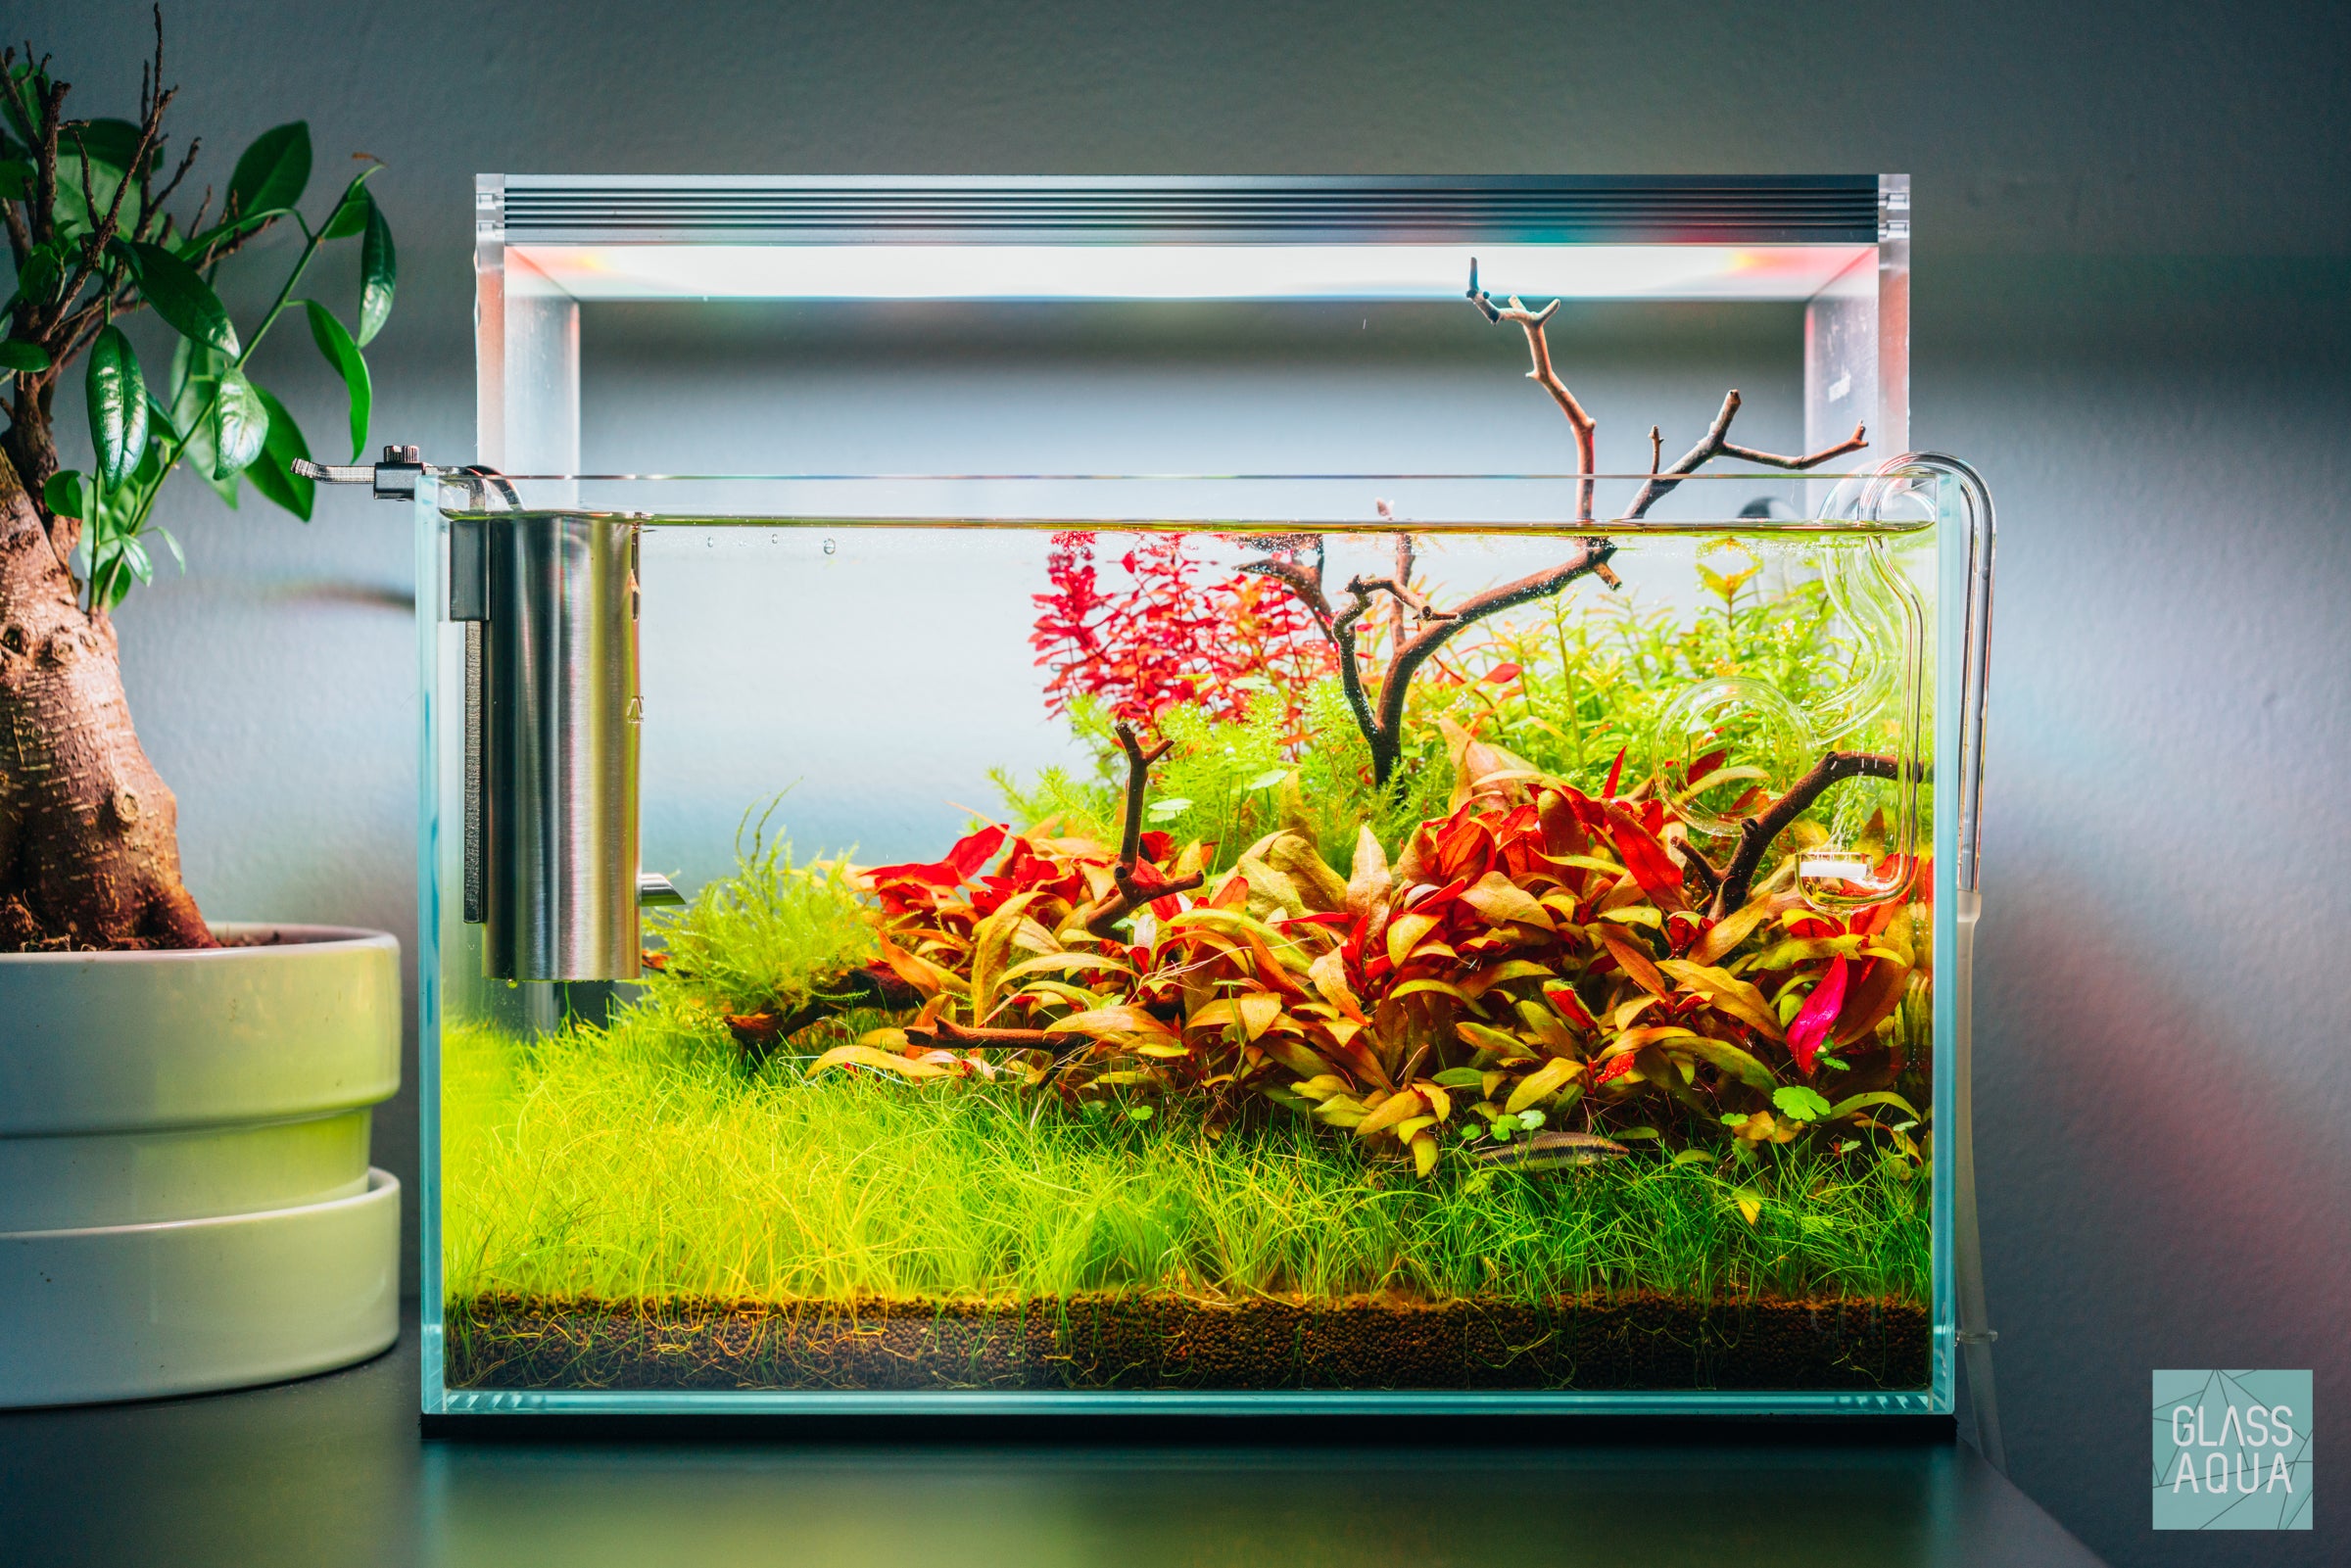 Glass Aqua Planted Aquarium Tank Inspiration - Shop The Look